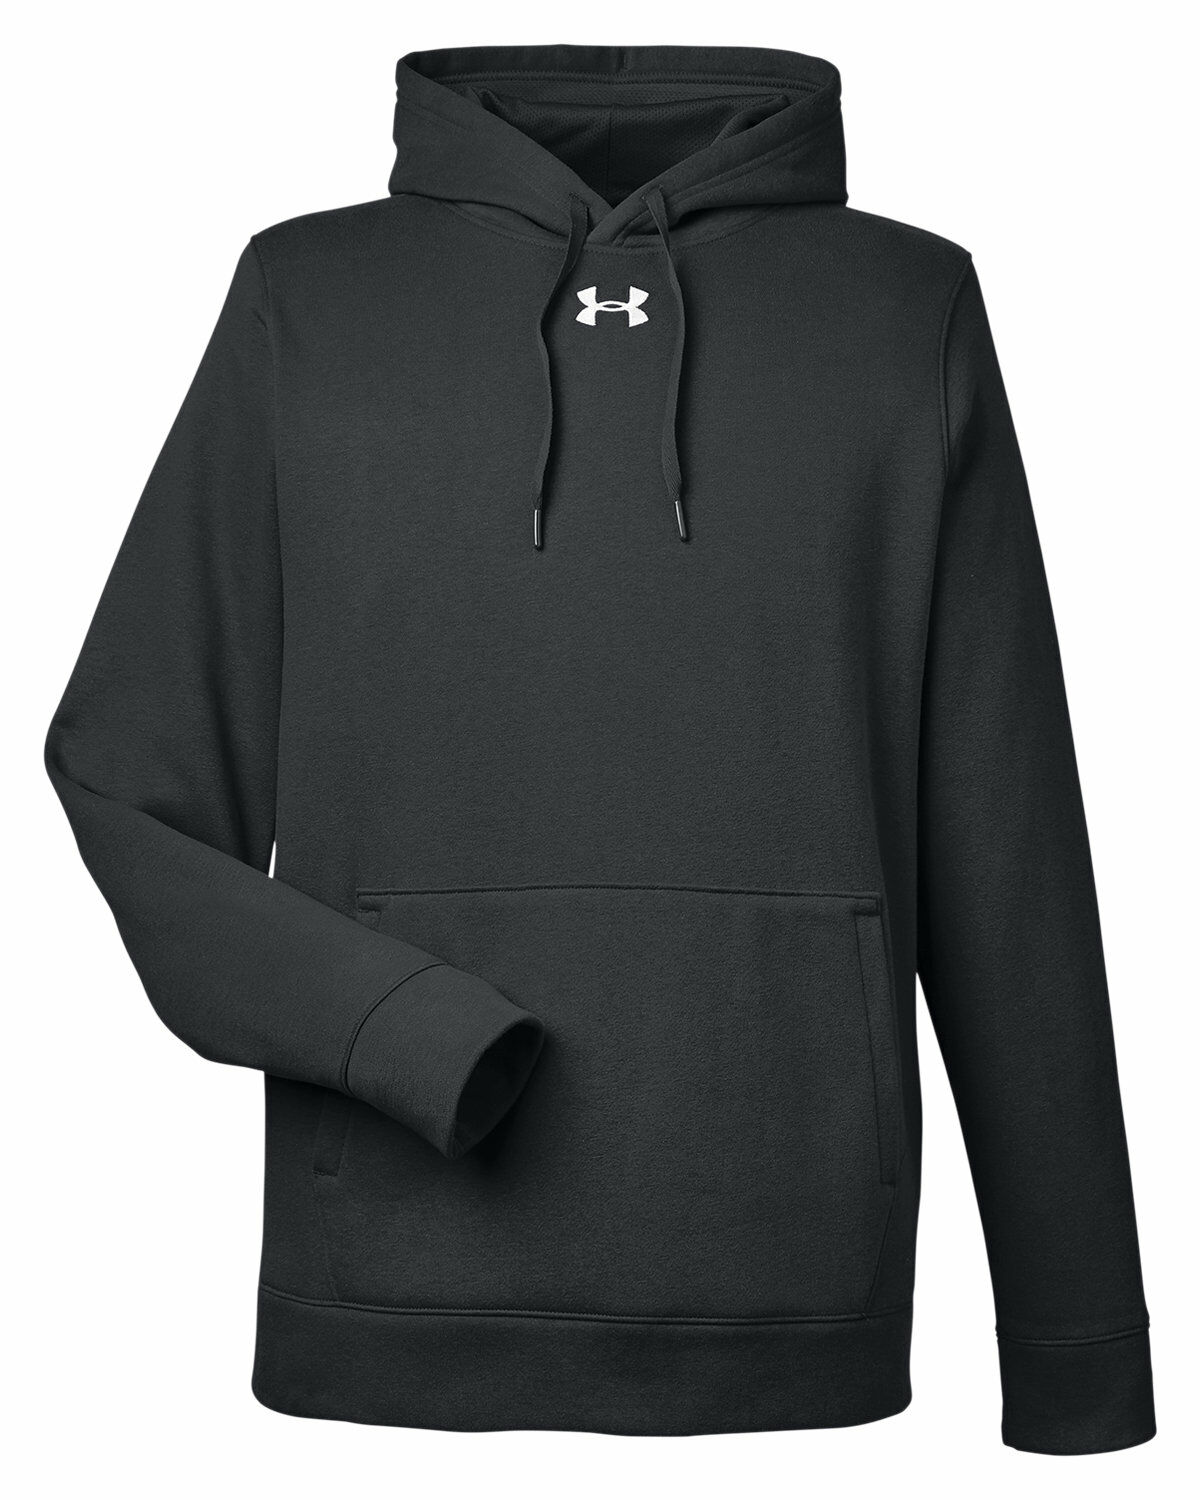 Branded Under Armour Men’s Hustle Pullover Hooded Sweatshirt Black/White